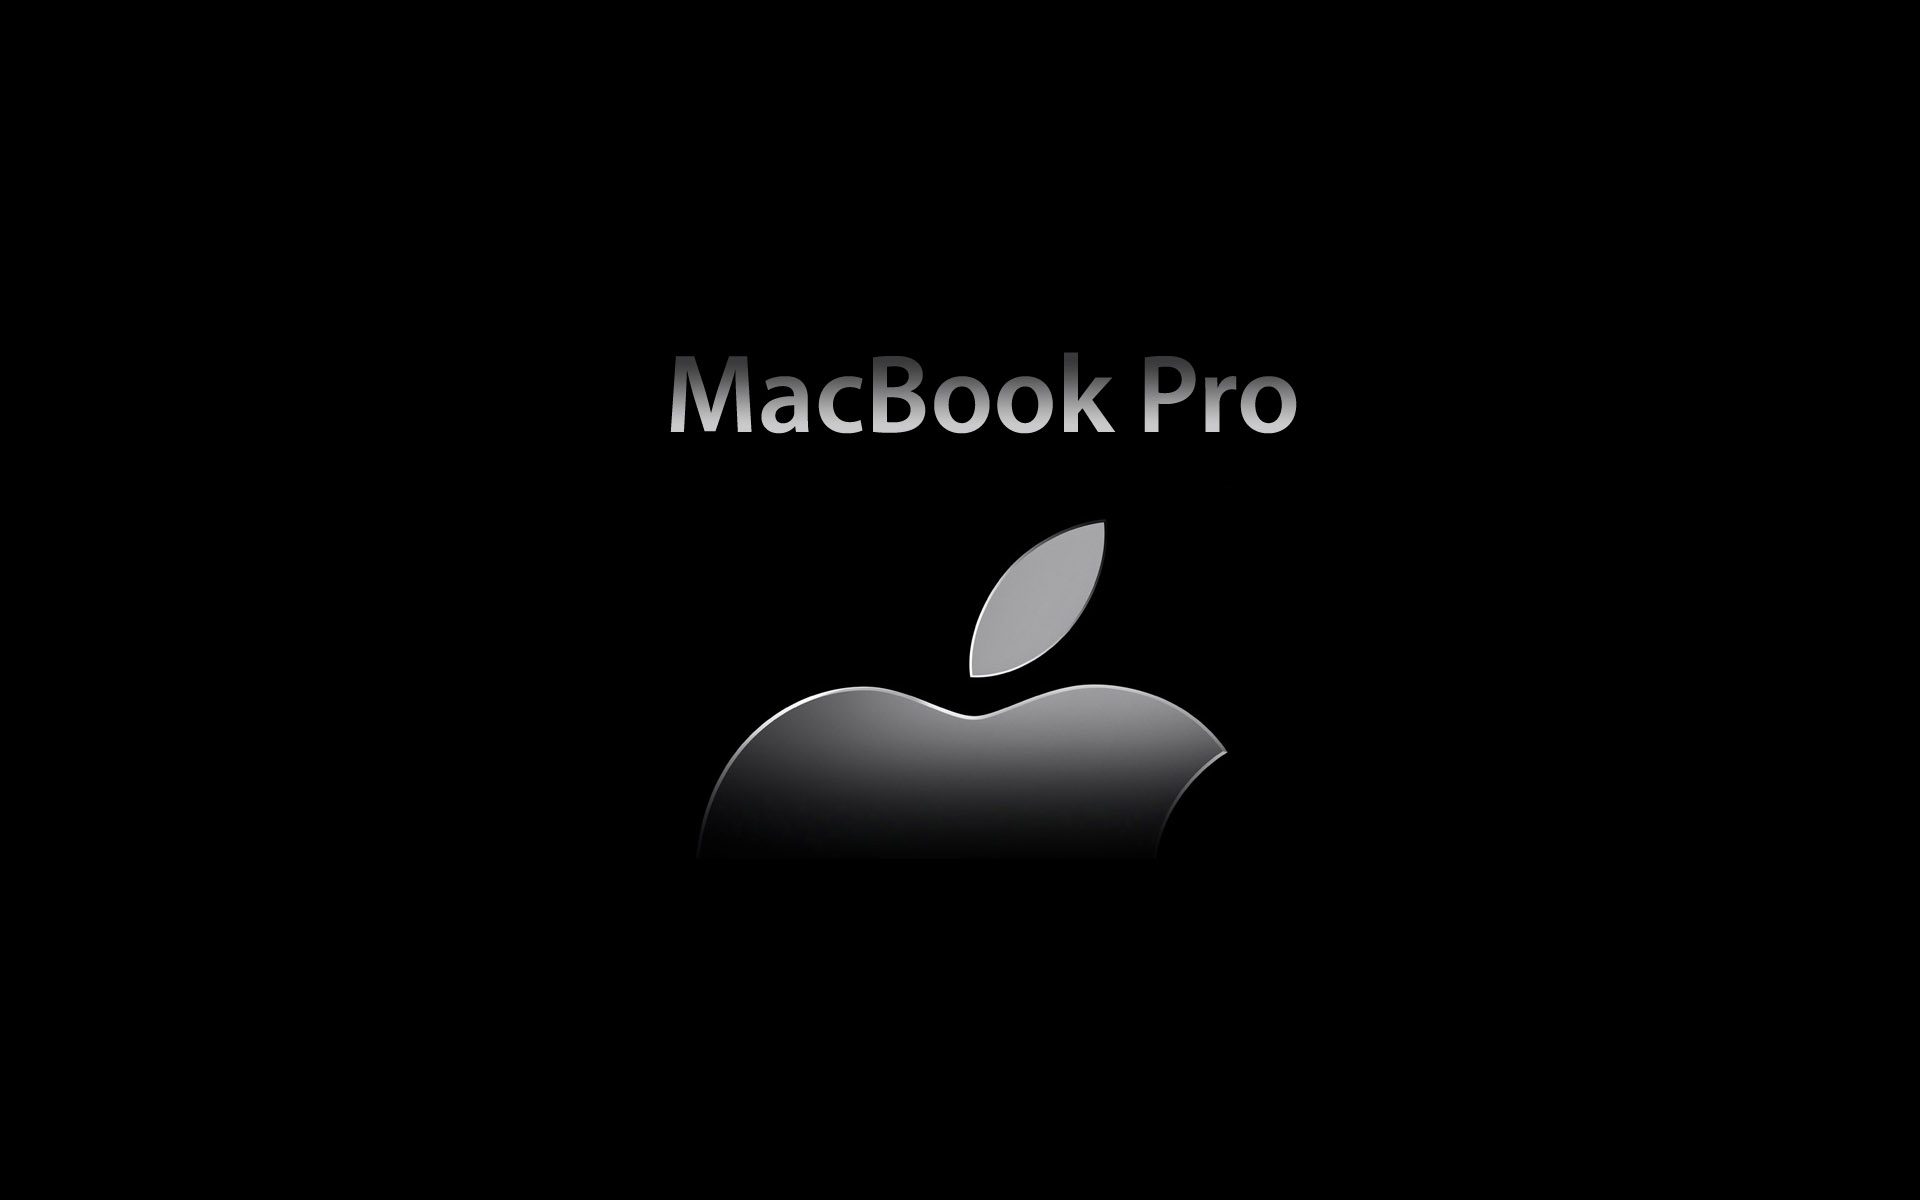 Macbook Pro Backgrounds